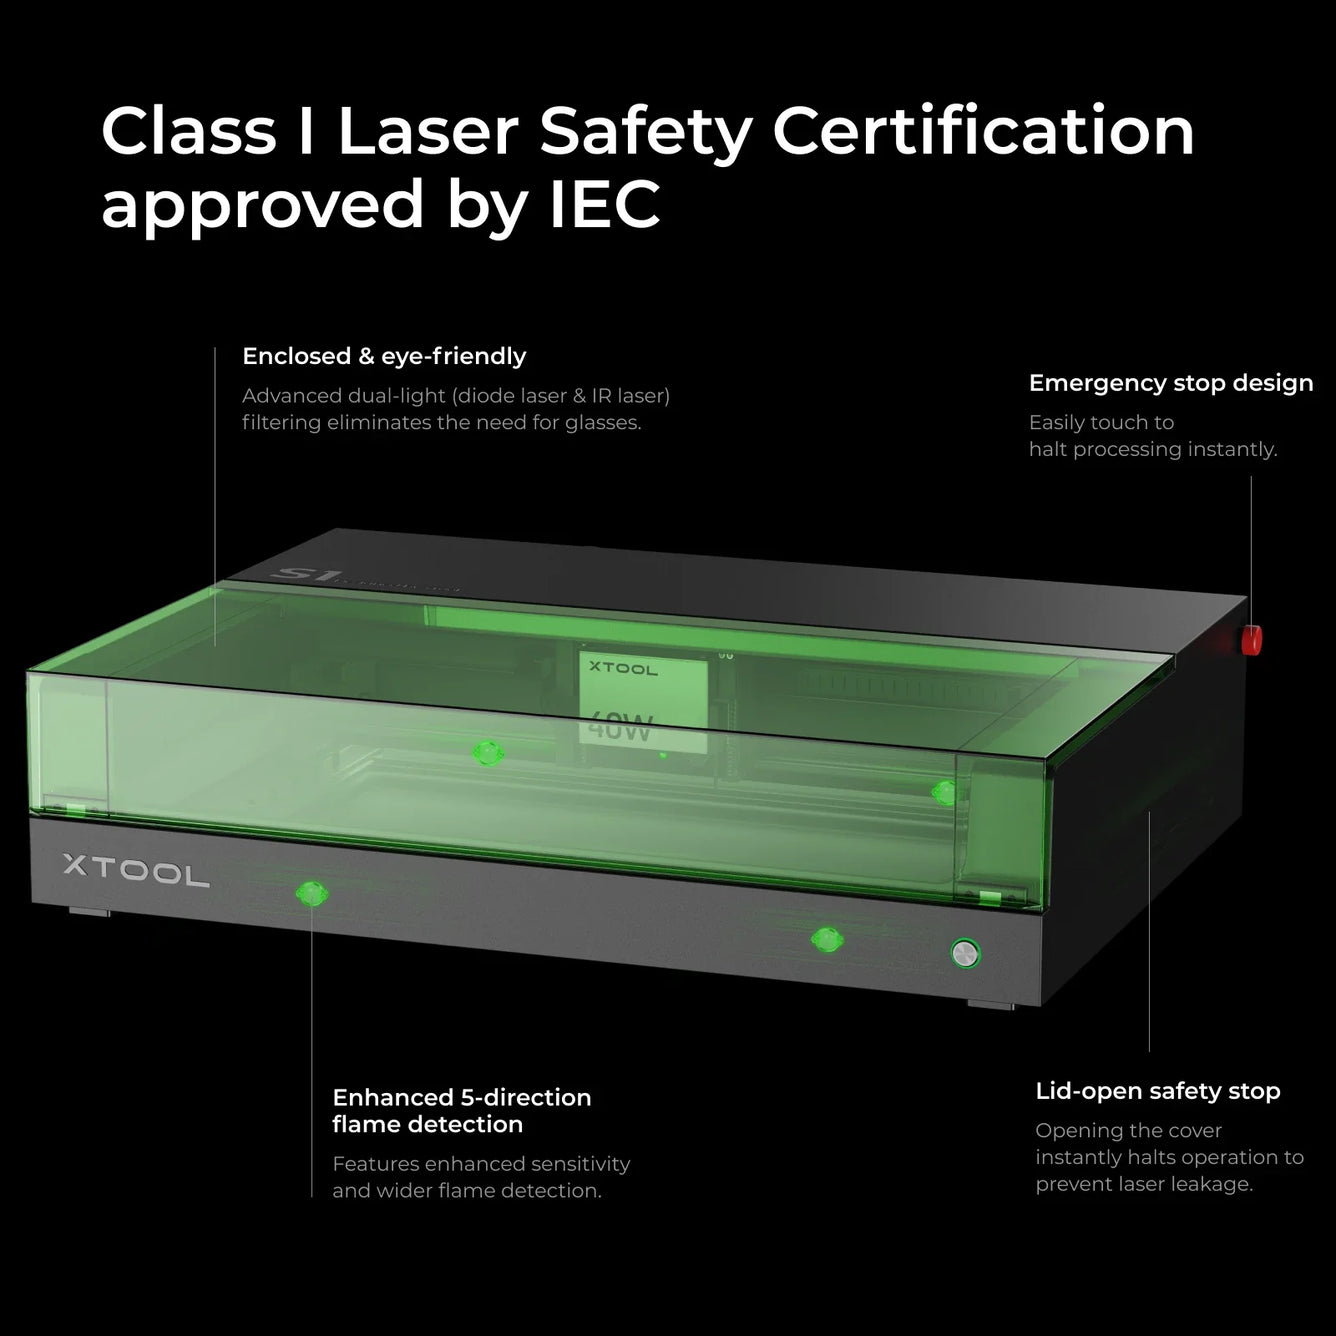 Review: Xtool S1 40Watt Laser Cutter - Make